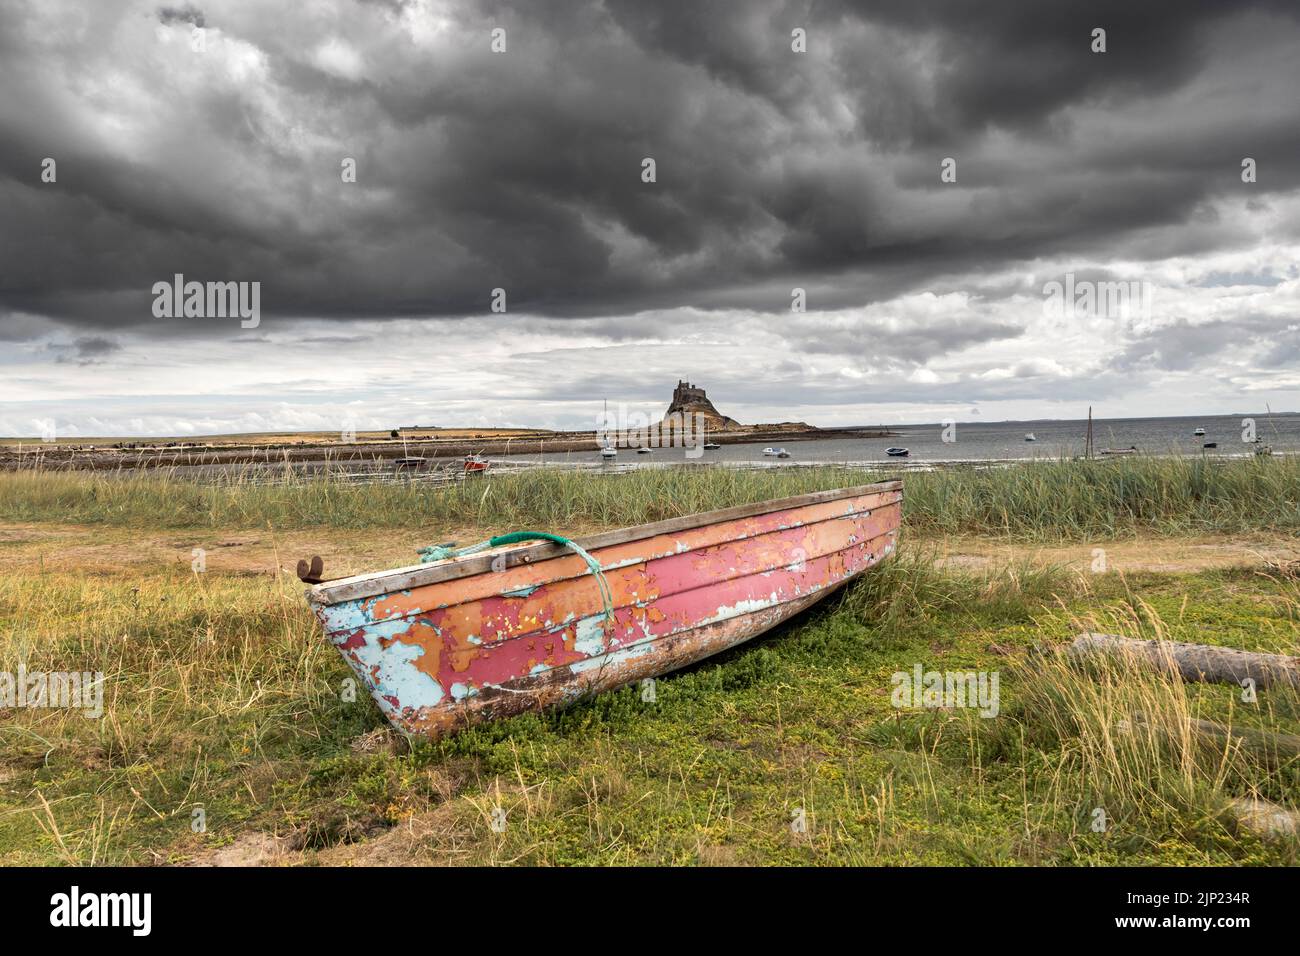 Vieux bateau de pêche avec le château de Lindisfarne en arrière-plan, Lindisfarne (île Sainte), Northumberland, Angleterre, Royaume-Uni Banque D'Images